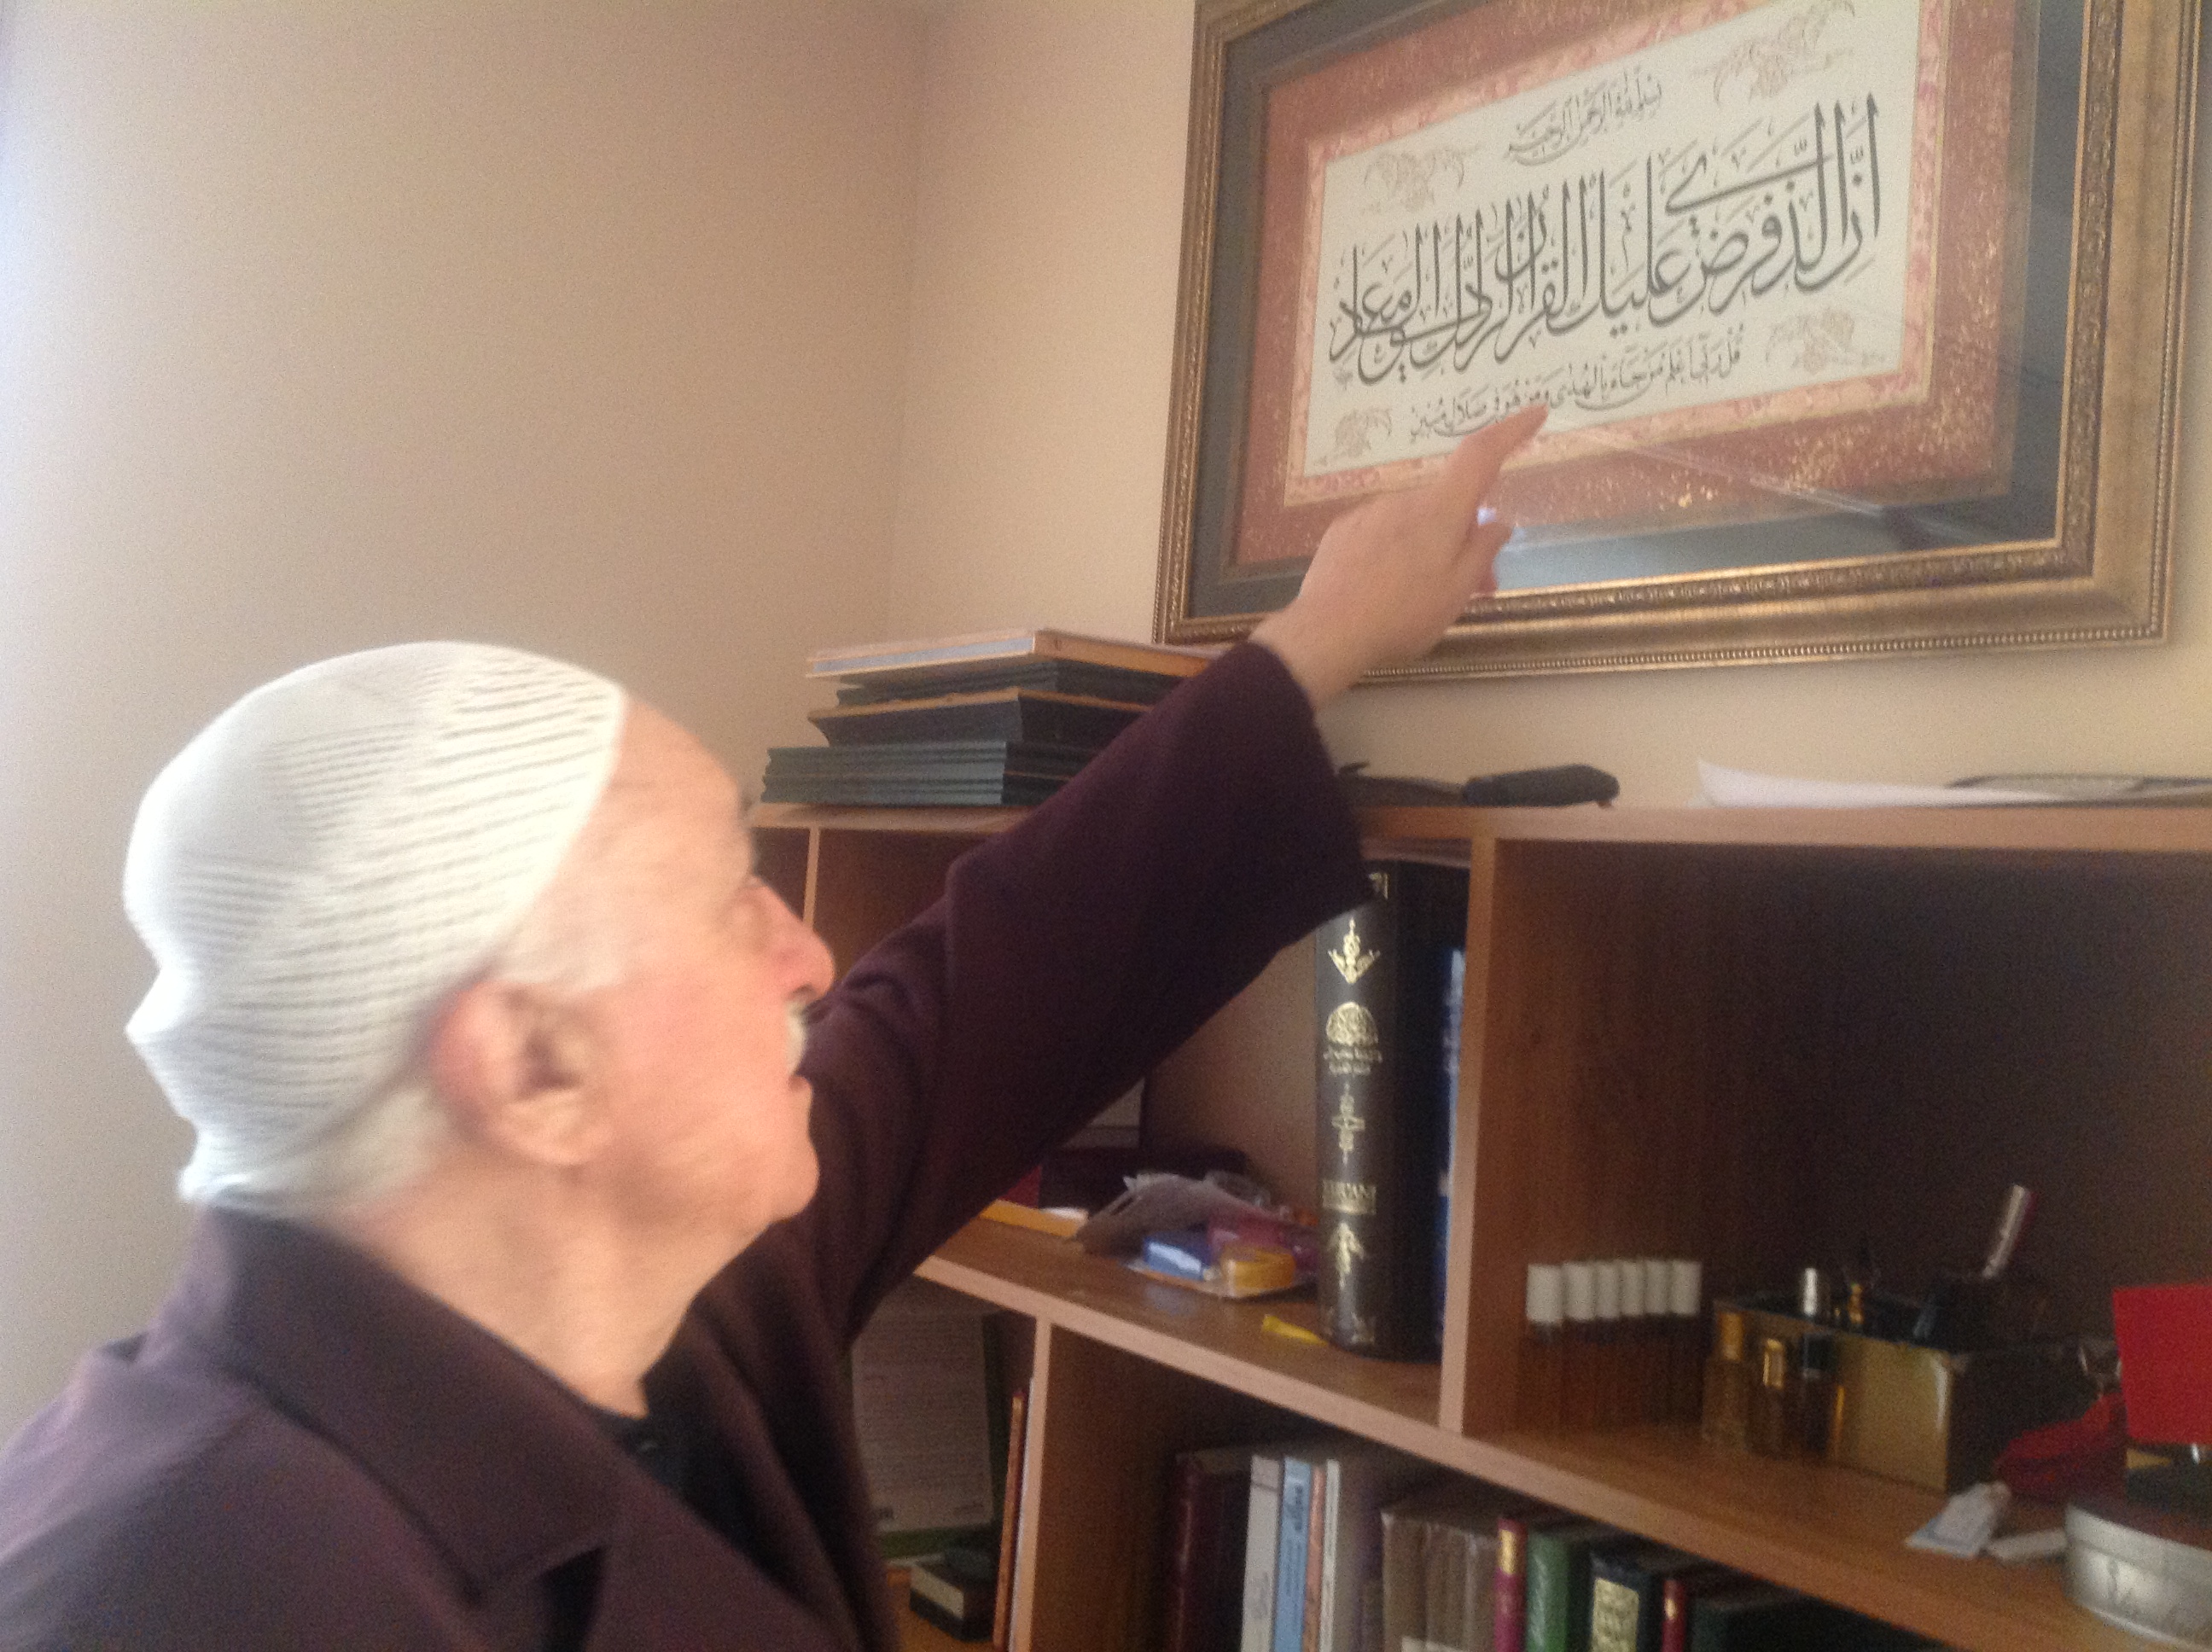 Muhterem Fethullah Gülen Hocaefendi, Kasas Sûresi'nin 85. ayet-i kerimesini ihtiva eden tabloyu gösterirken